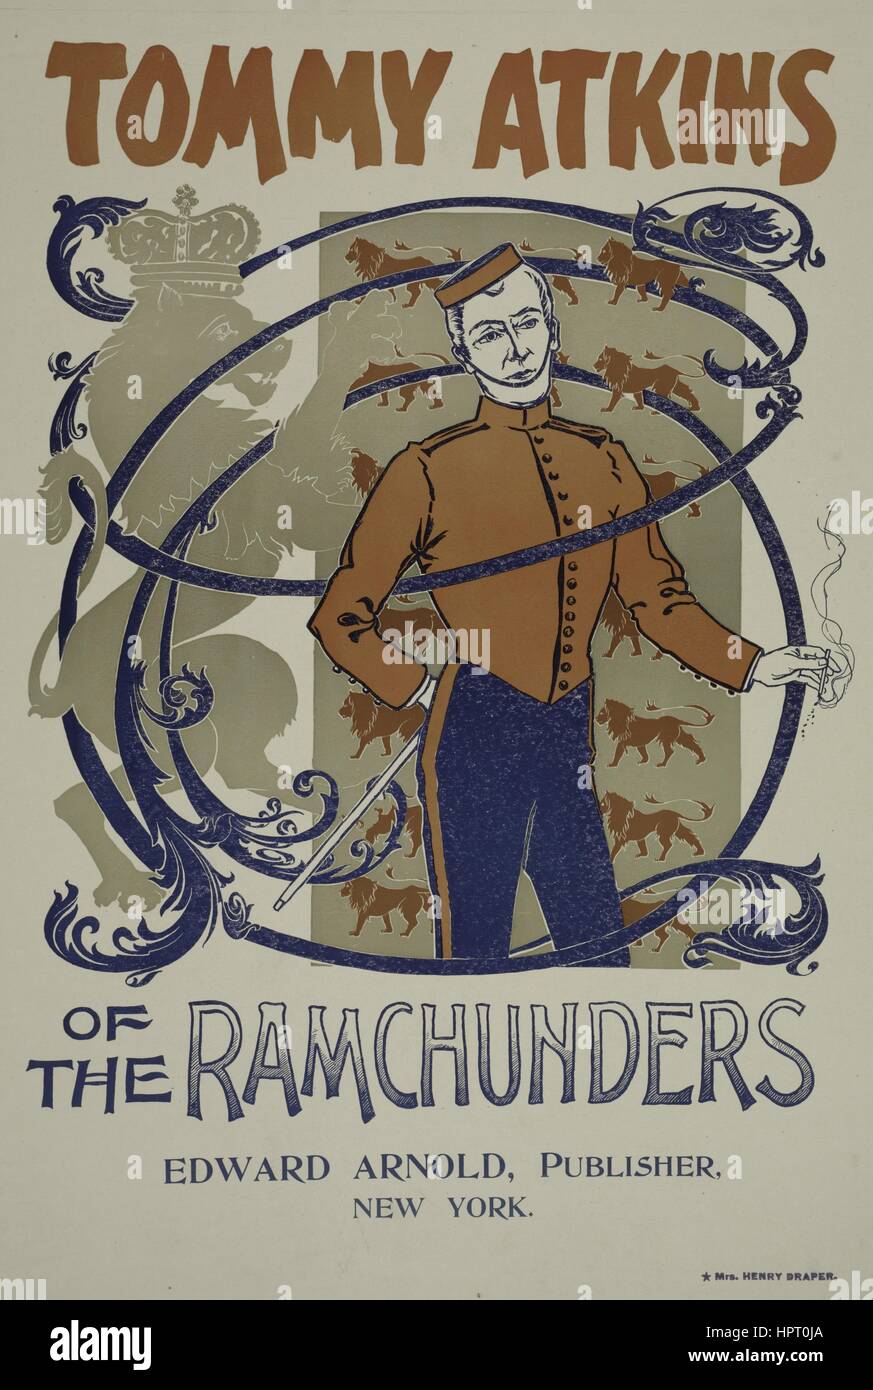 Plakat Werbung für ein Buch mit dem Titel Tommy Atkins von der Ramchunders von Edward Arnold, der einen Mann in einer Art uniform, 1903 anzeigt. Von der New York Public Library. Stockfoto